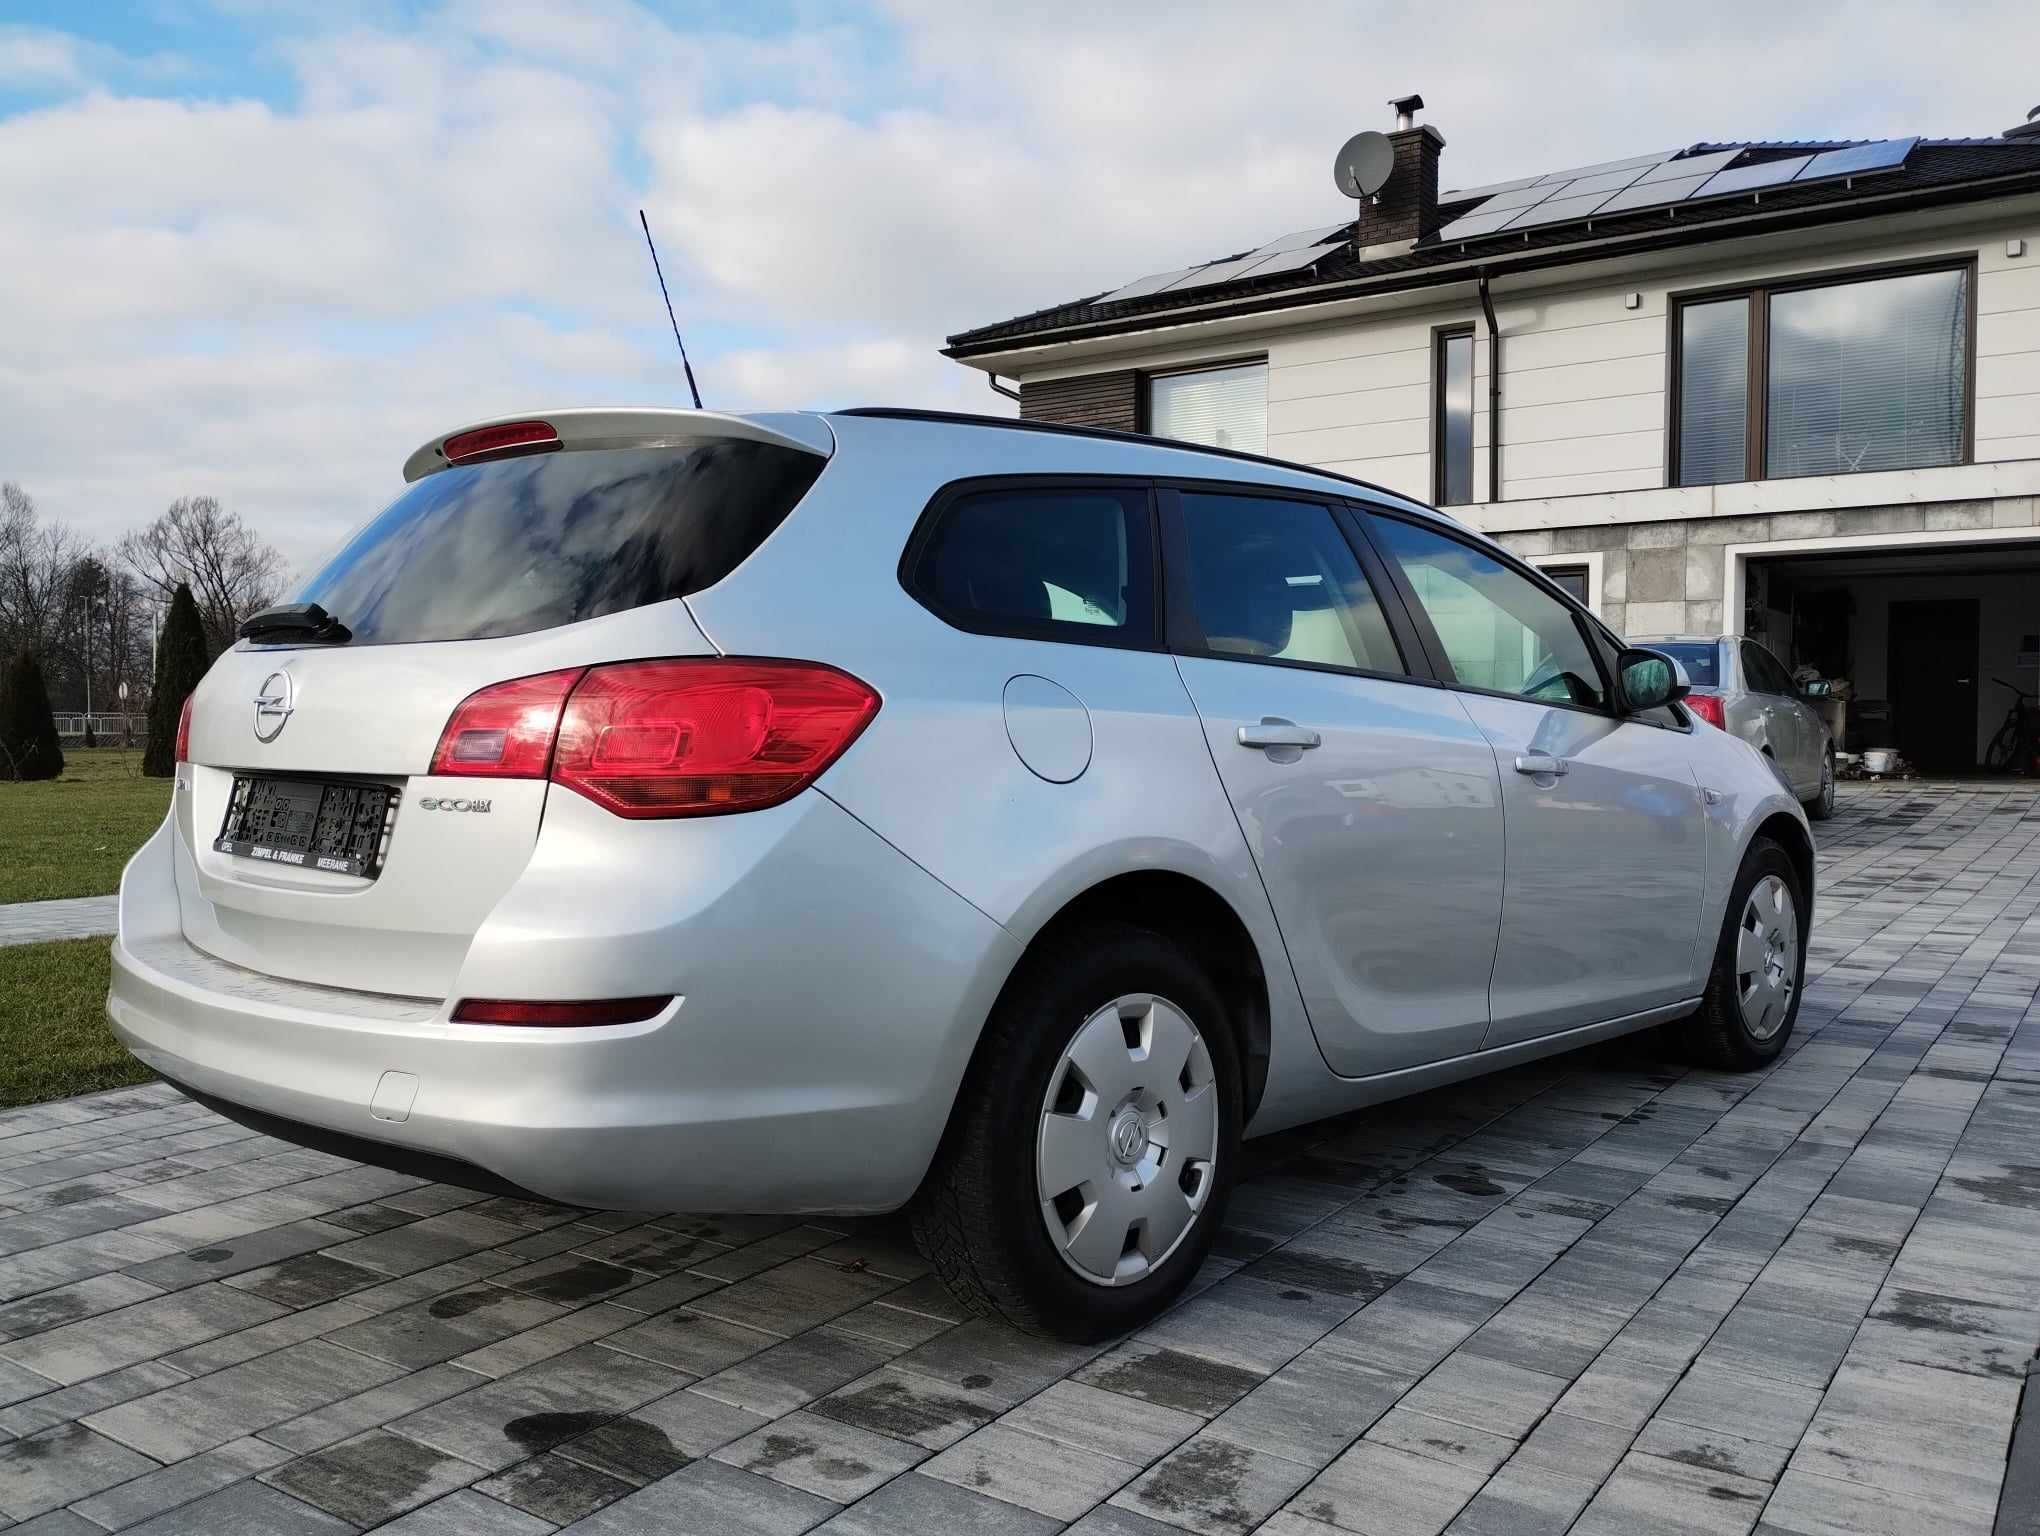 Opel Astra 1,3, diesel, rok 2011, bardzo dobry stan, niski przebieg